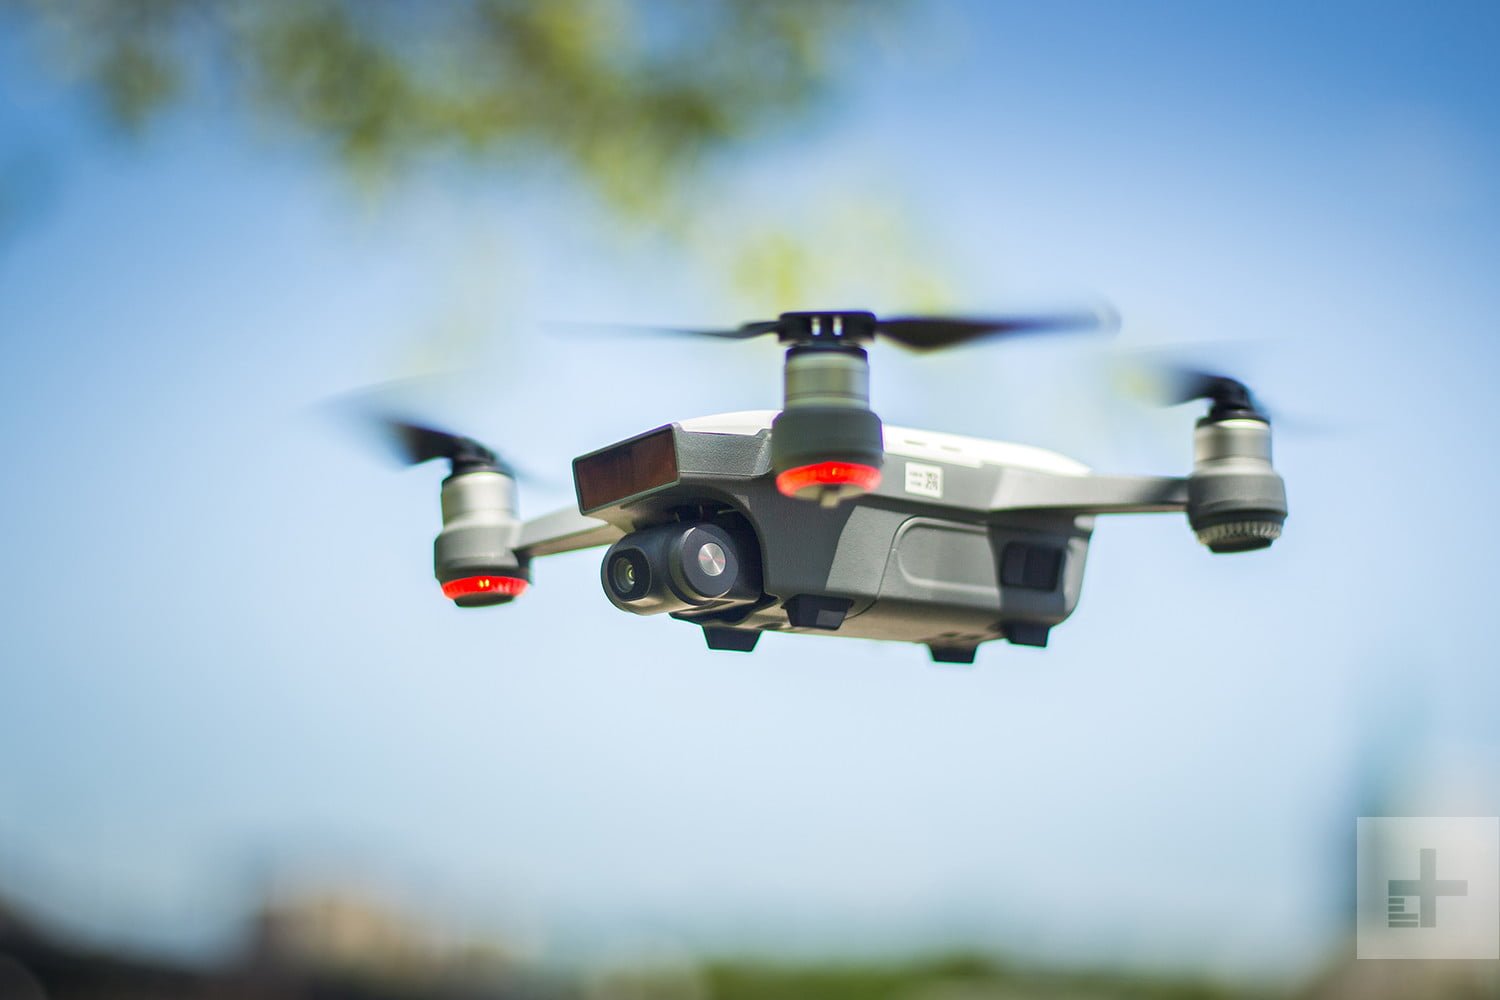 More information about "Drones θα ελέγχουν τις υποδομές της χώρας"